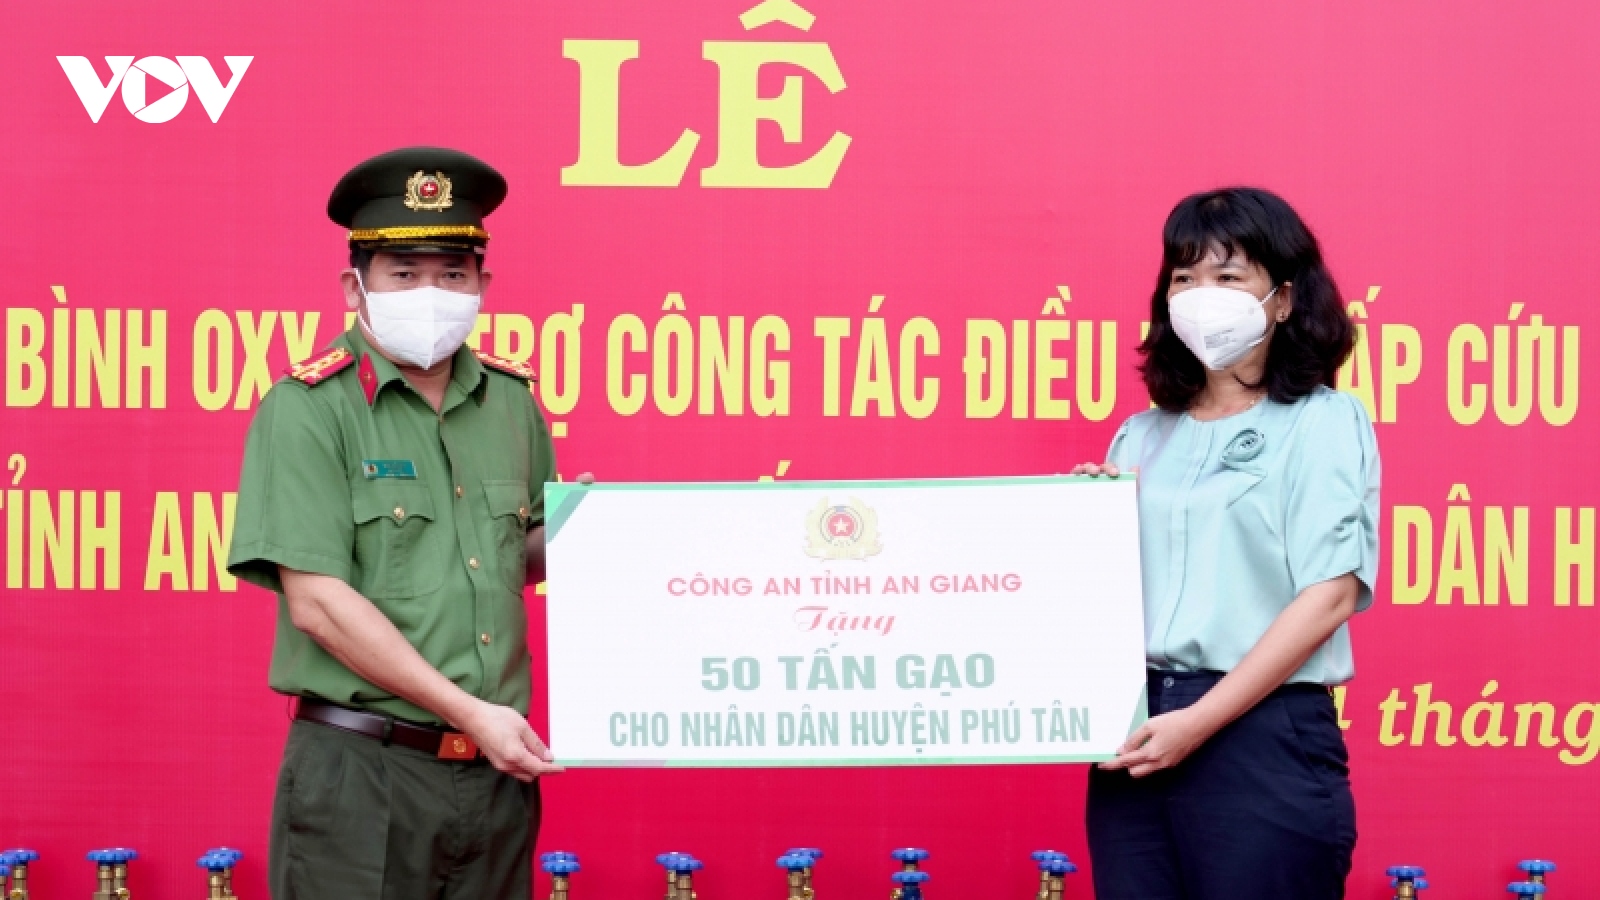 Trao tặng 2.000 bình oxy và 50 tấn gạo hỗ trợ phòng, chống dịch Covid-19 tại An Giang